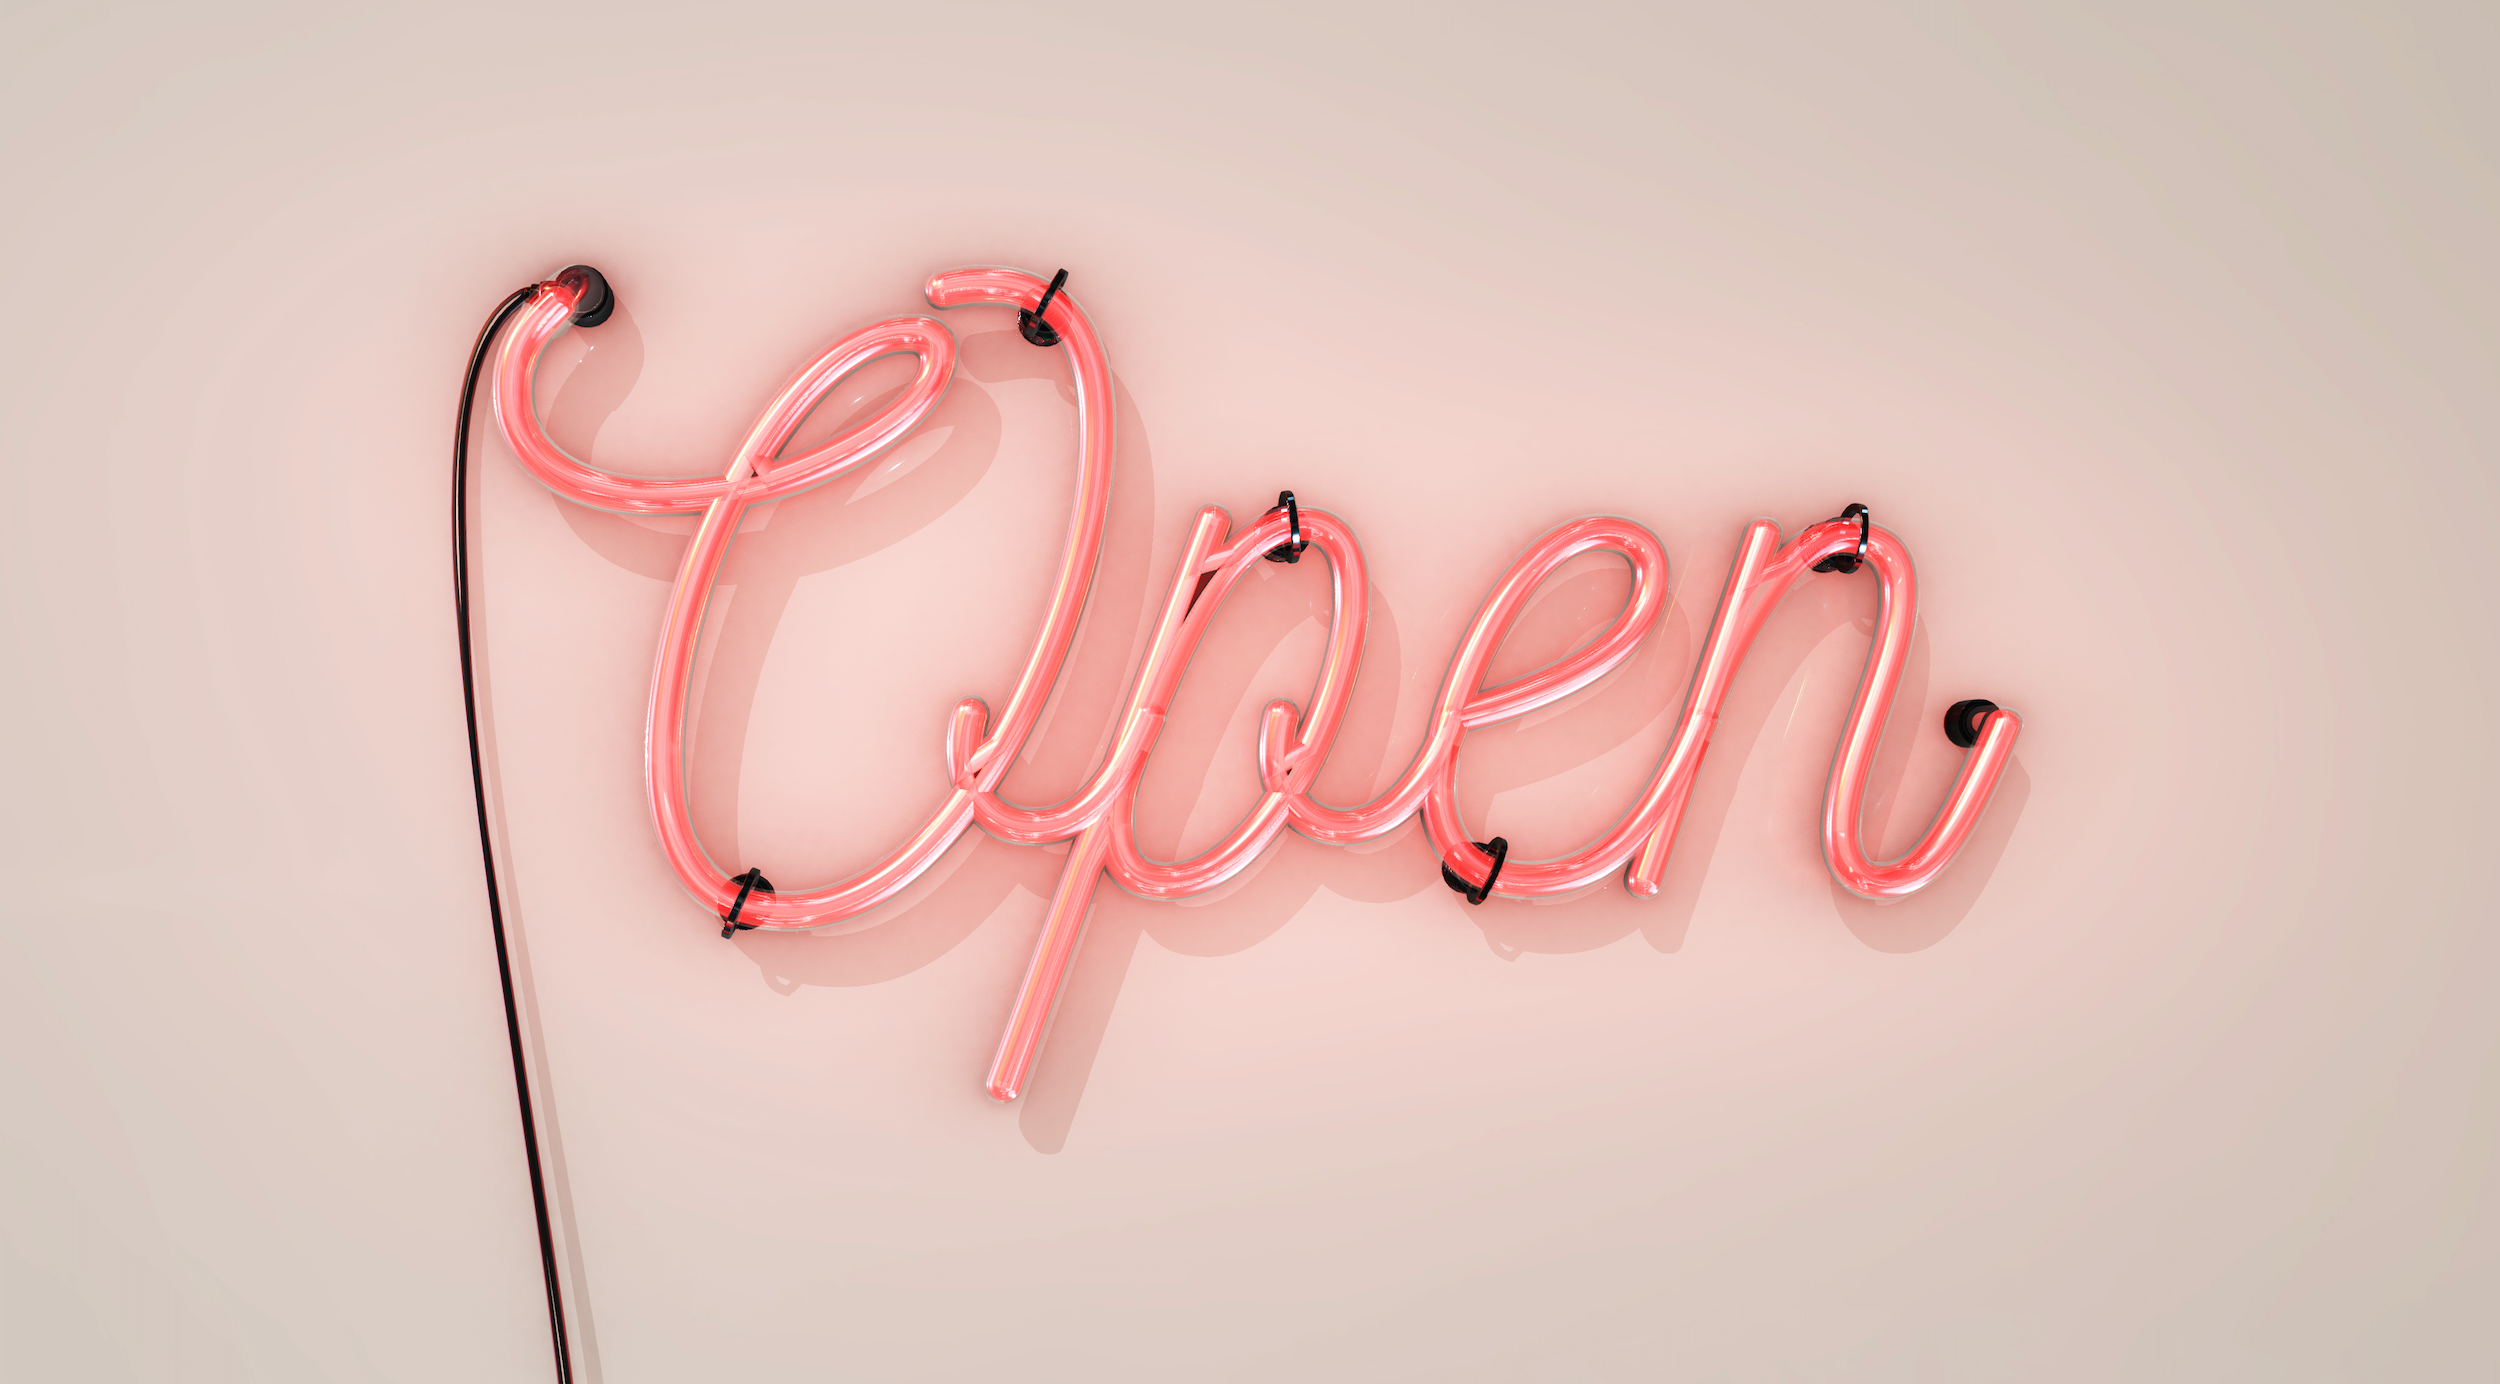 Neonschild Open repräsentiert Offenheit für Inklusion